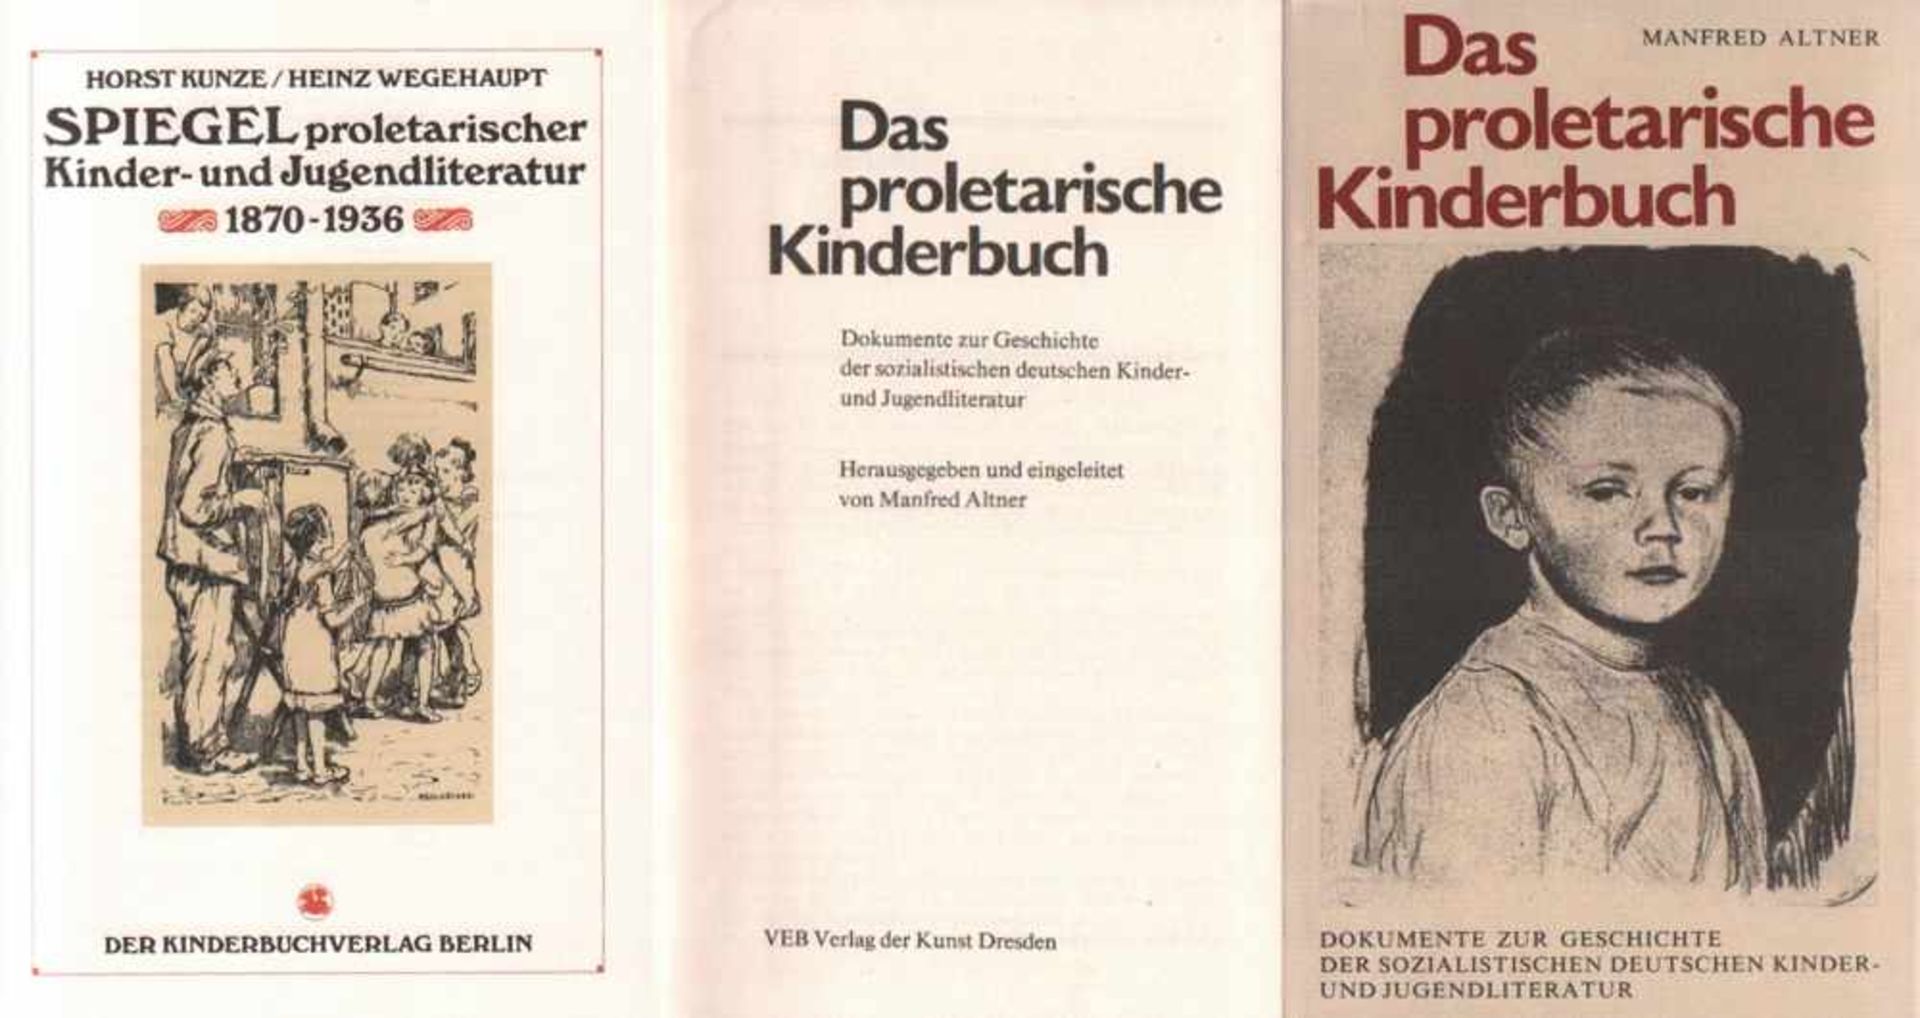 Kinderbücher. Nachschlagewerke / Sekundärliteratur.Kunze, Horst und Heinz Wegehaupt. Spiegel